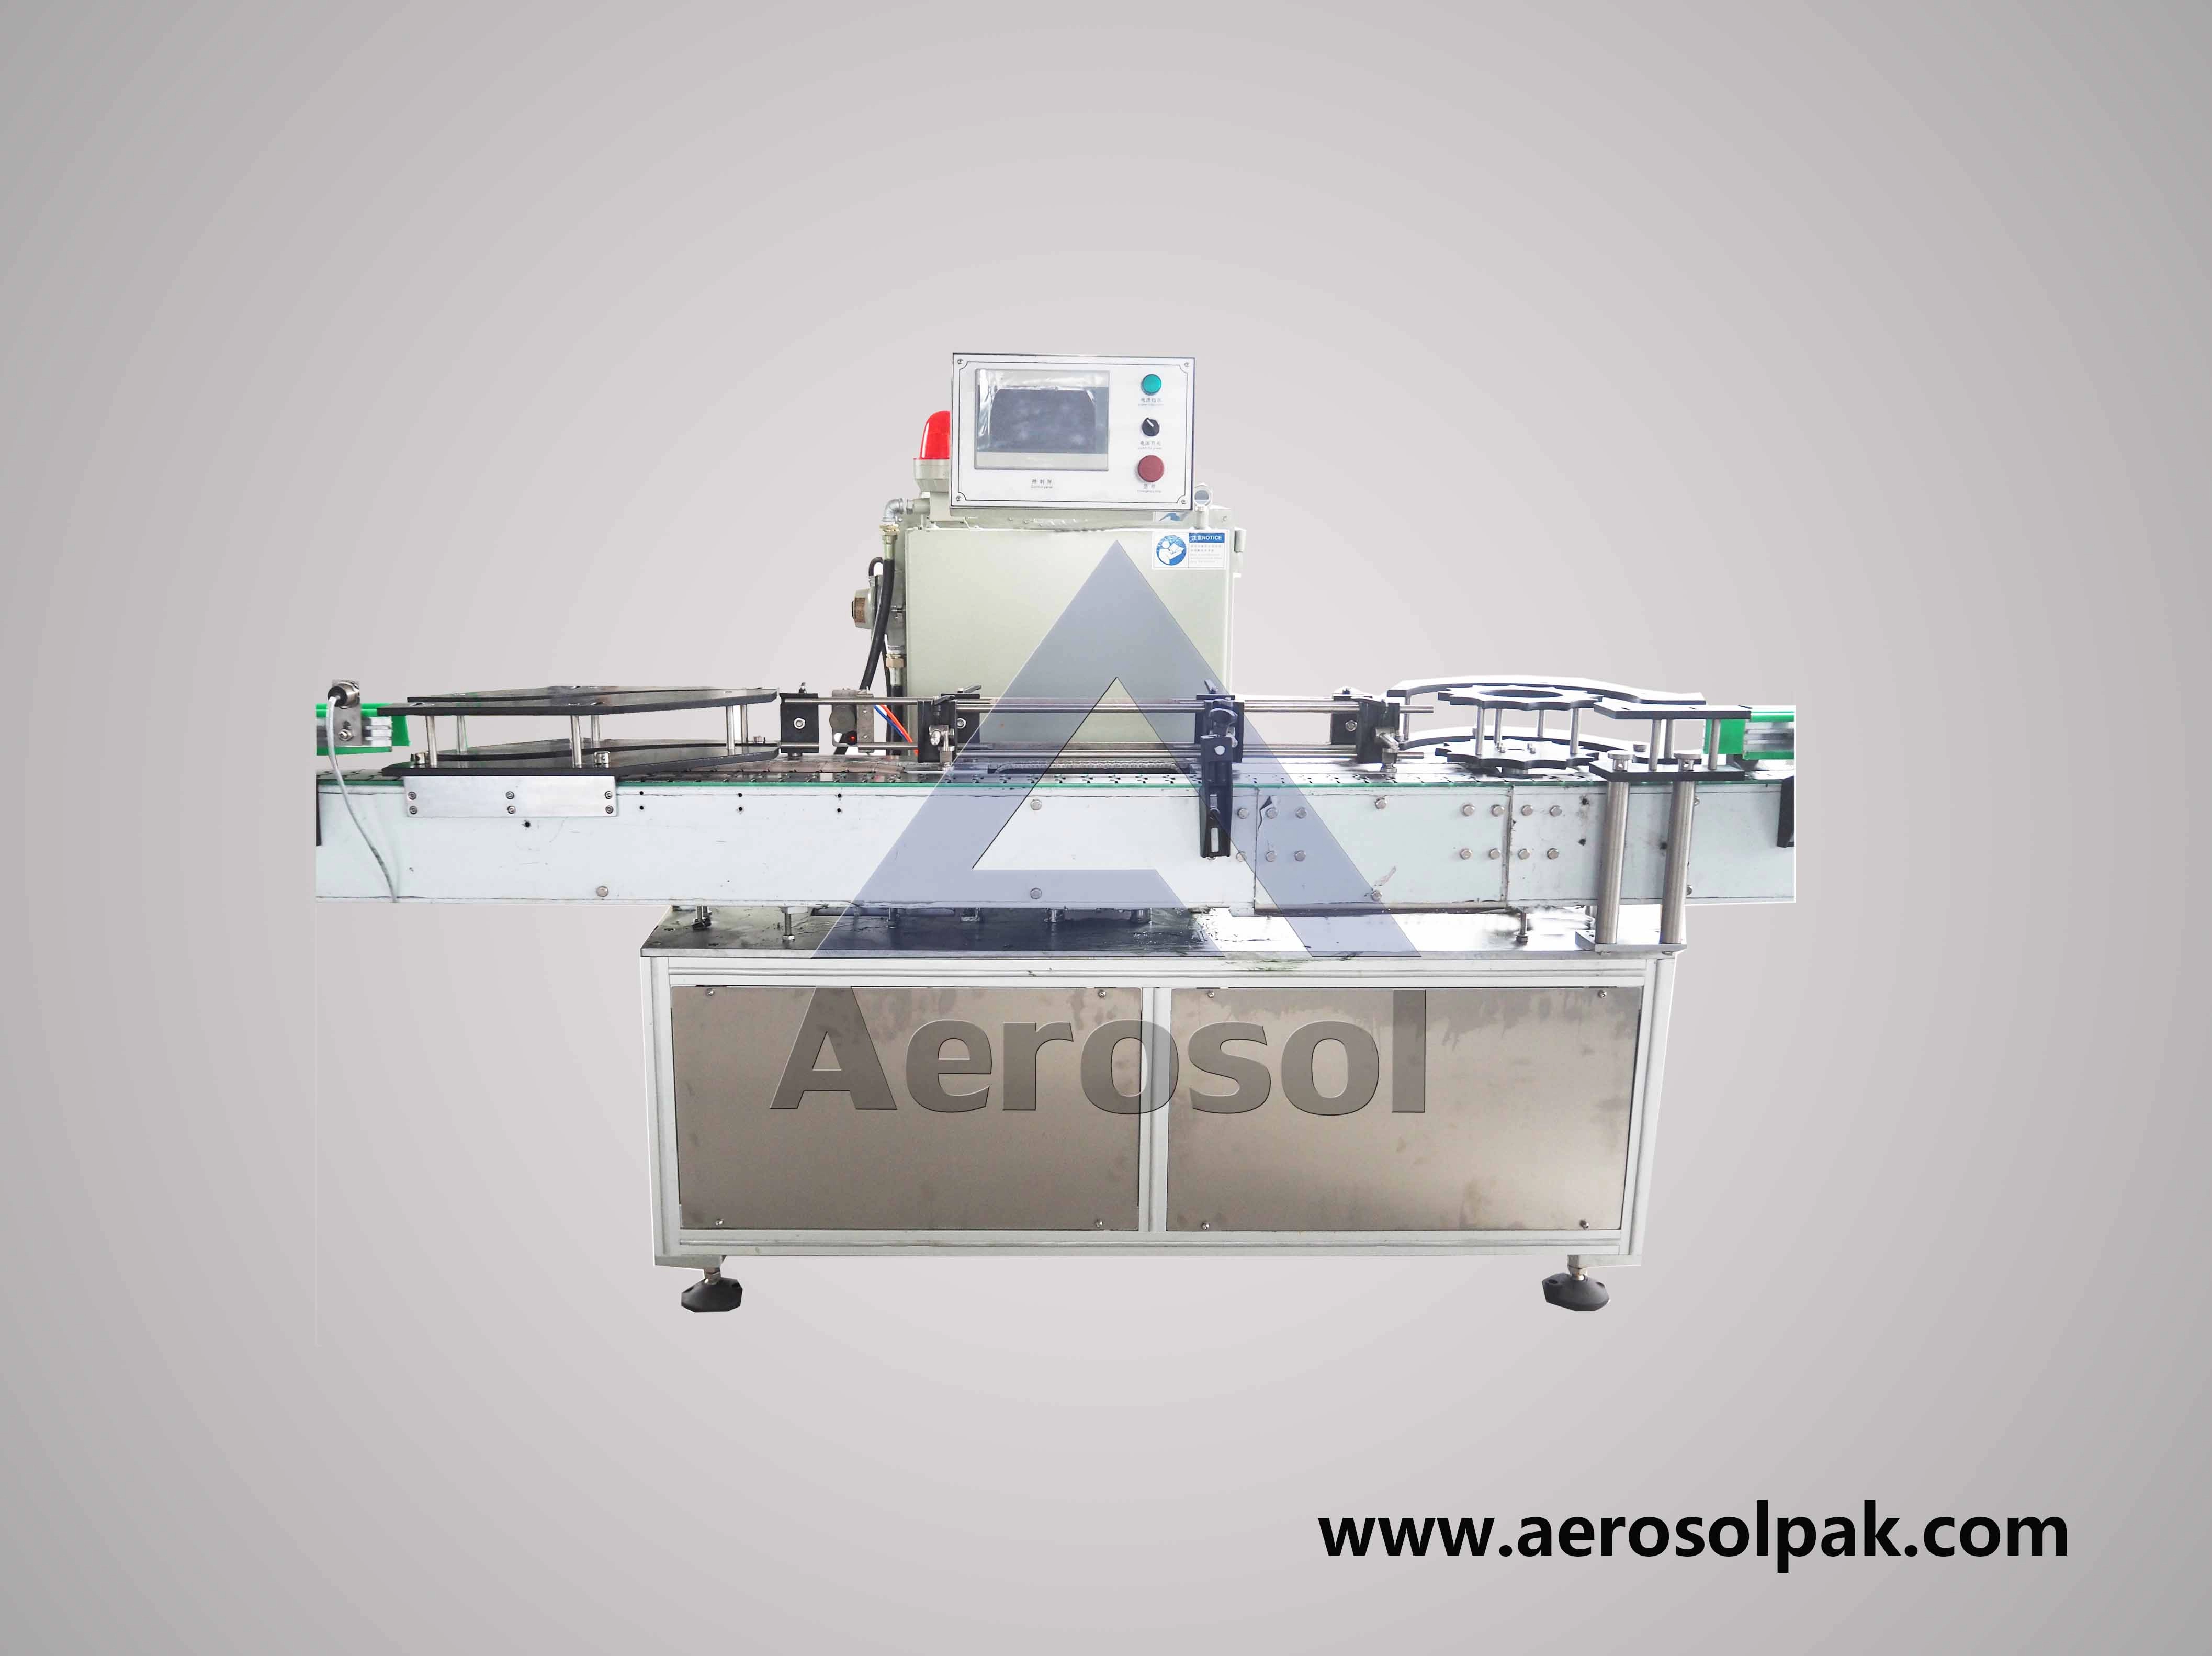 AWC-120 Aerosol สามารถตรวจสอบน้ำหนักบนน้ำหนักบรรทุกได้